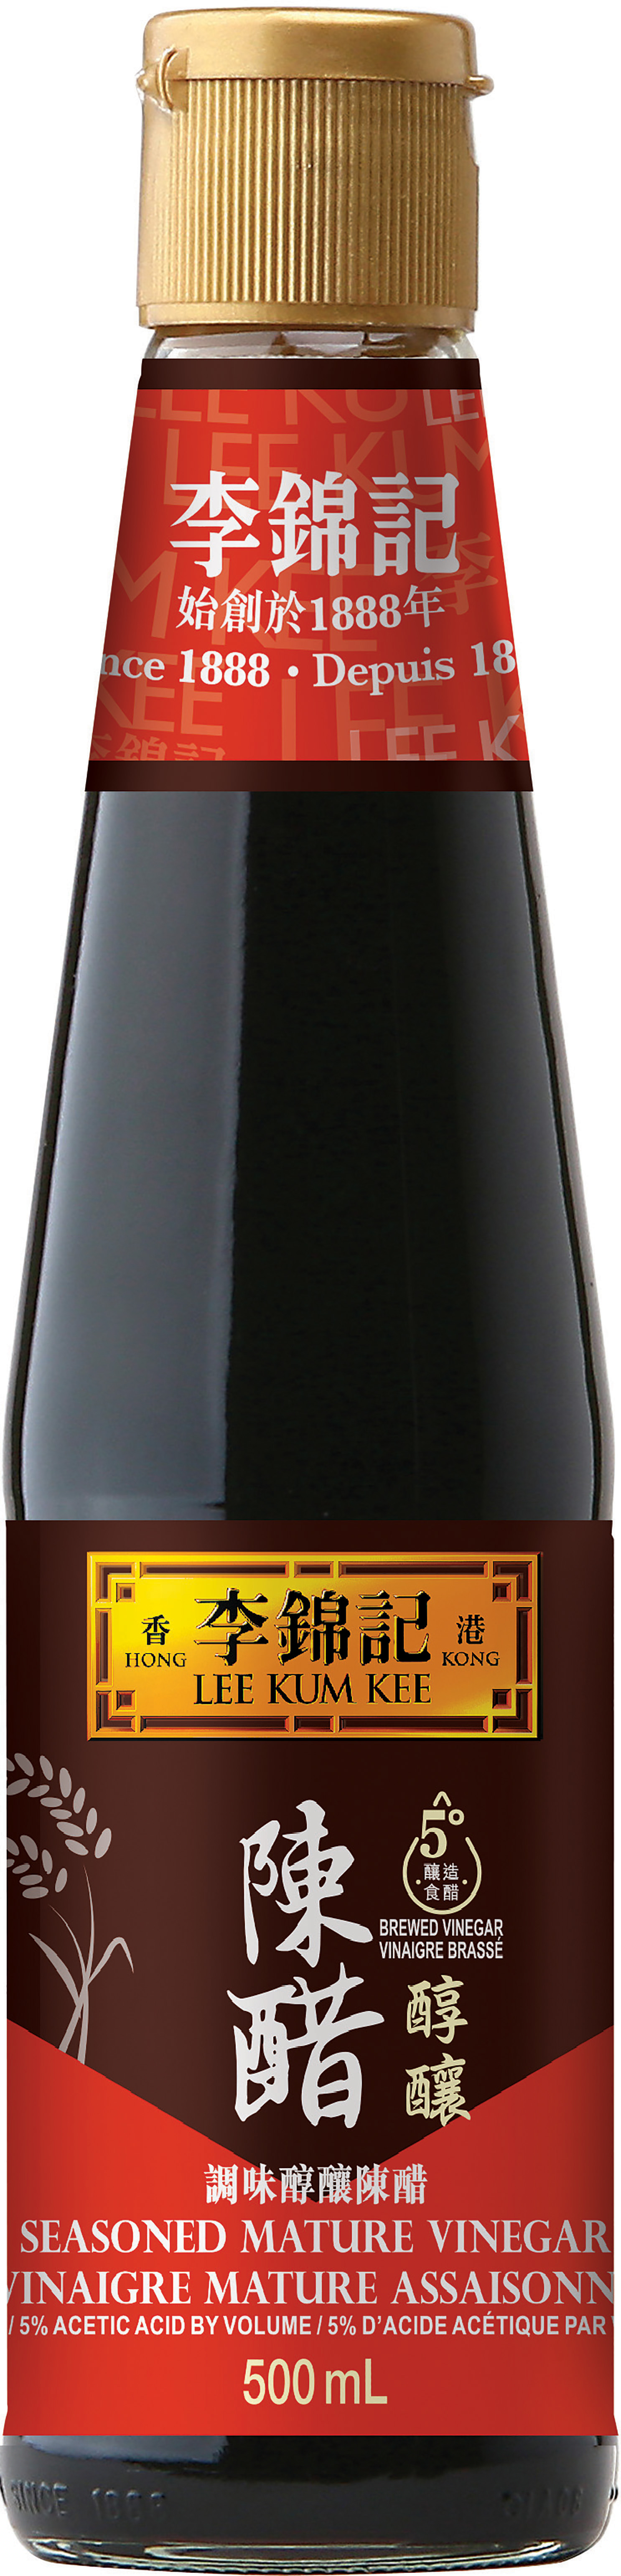 Seasoned Mature Vinegar, 500 mL Bottle